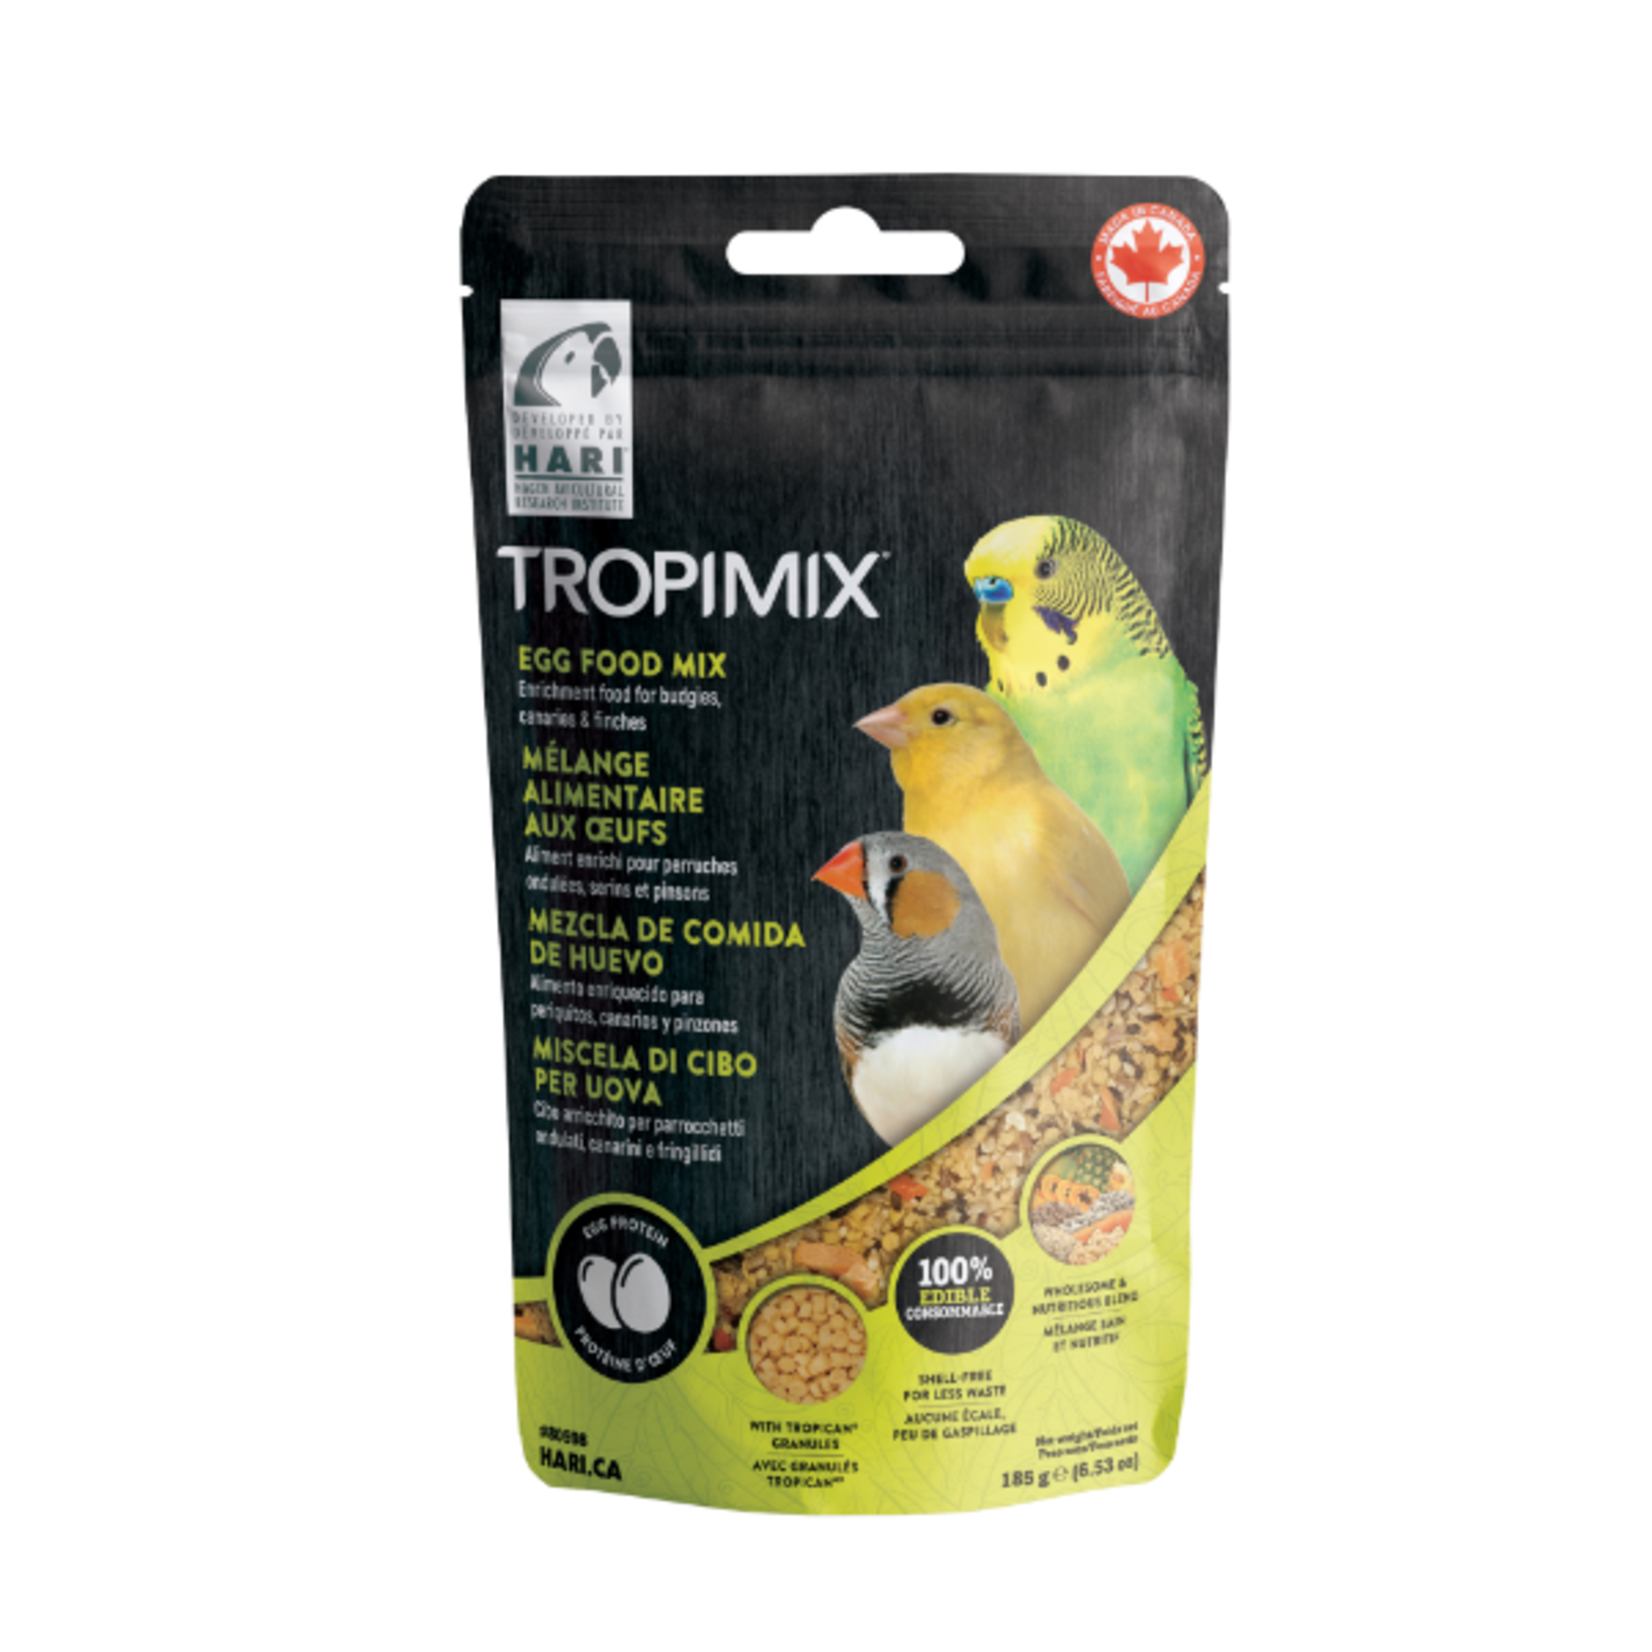 Hari Tropimix - Mélange d'enrichissement aux œufs - Nourriture pour perruches, canaris et pinsons - 185 g